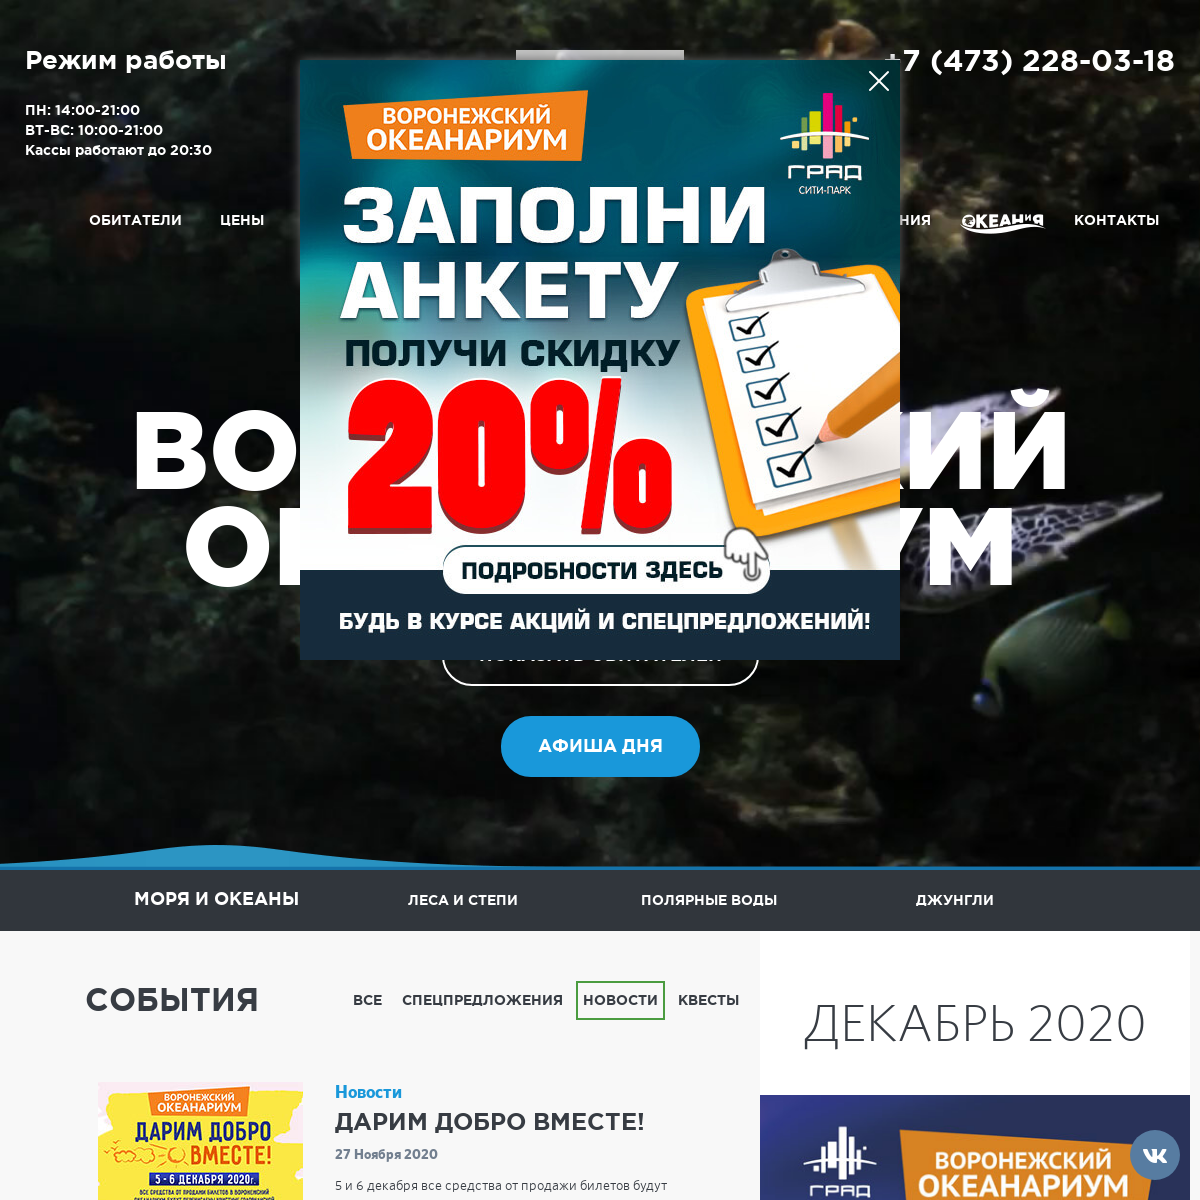 A complete backup of oceanarium-vrn.ru